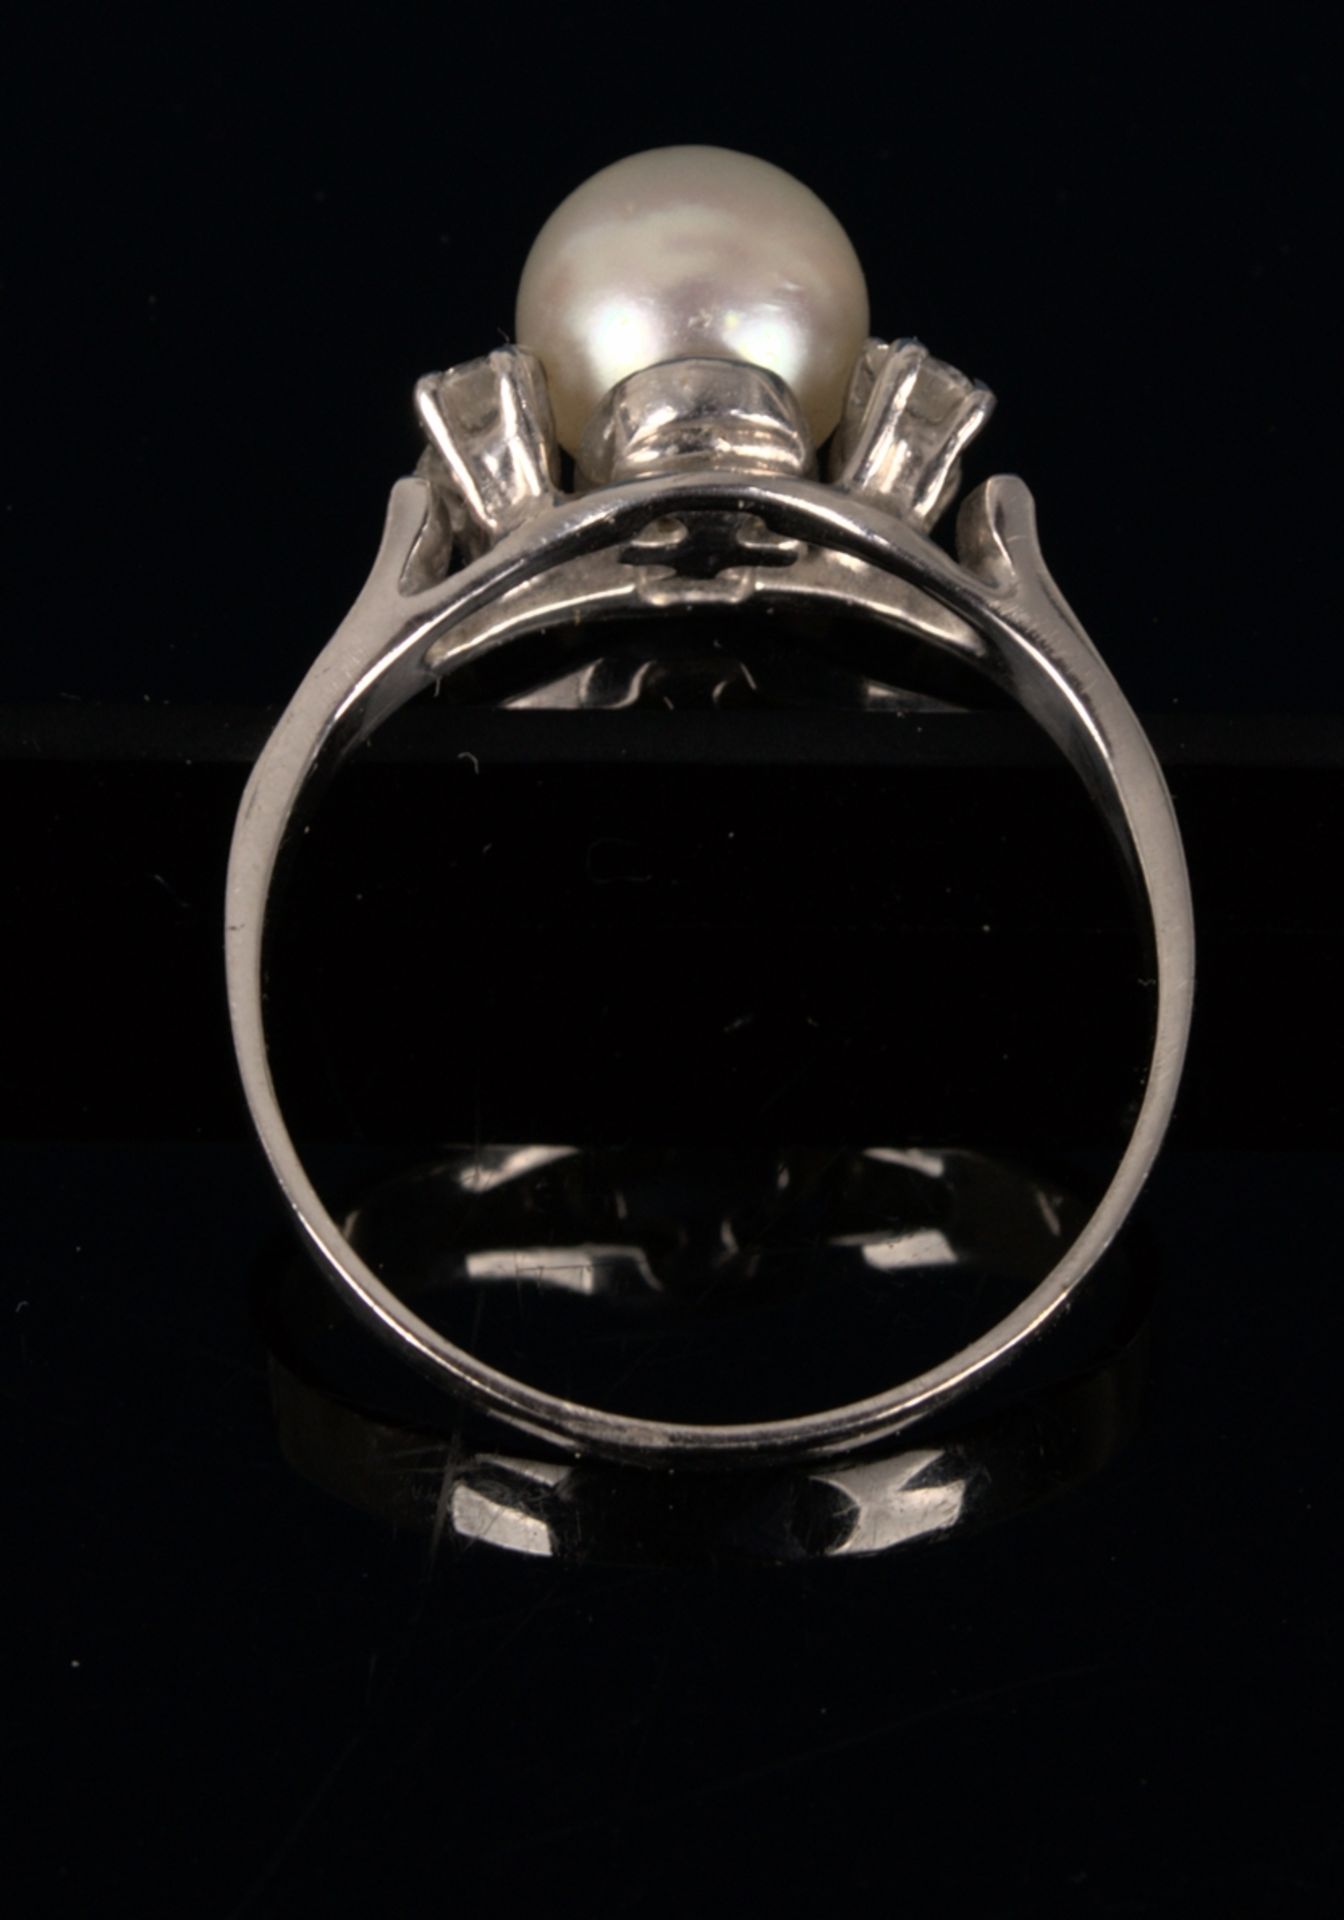 Prächtig eleganter 14 K Weißgold Ring mit gr. Perle umgeben von 4 Diamantsplittern, ungepunzt/ - Bild 3 aus 8